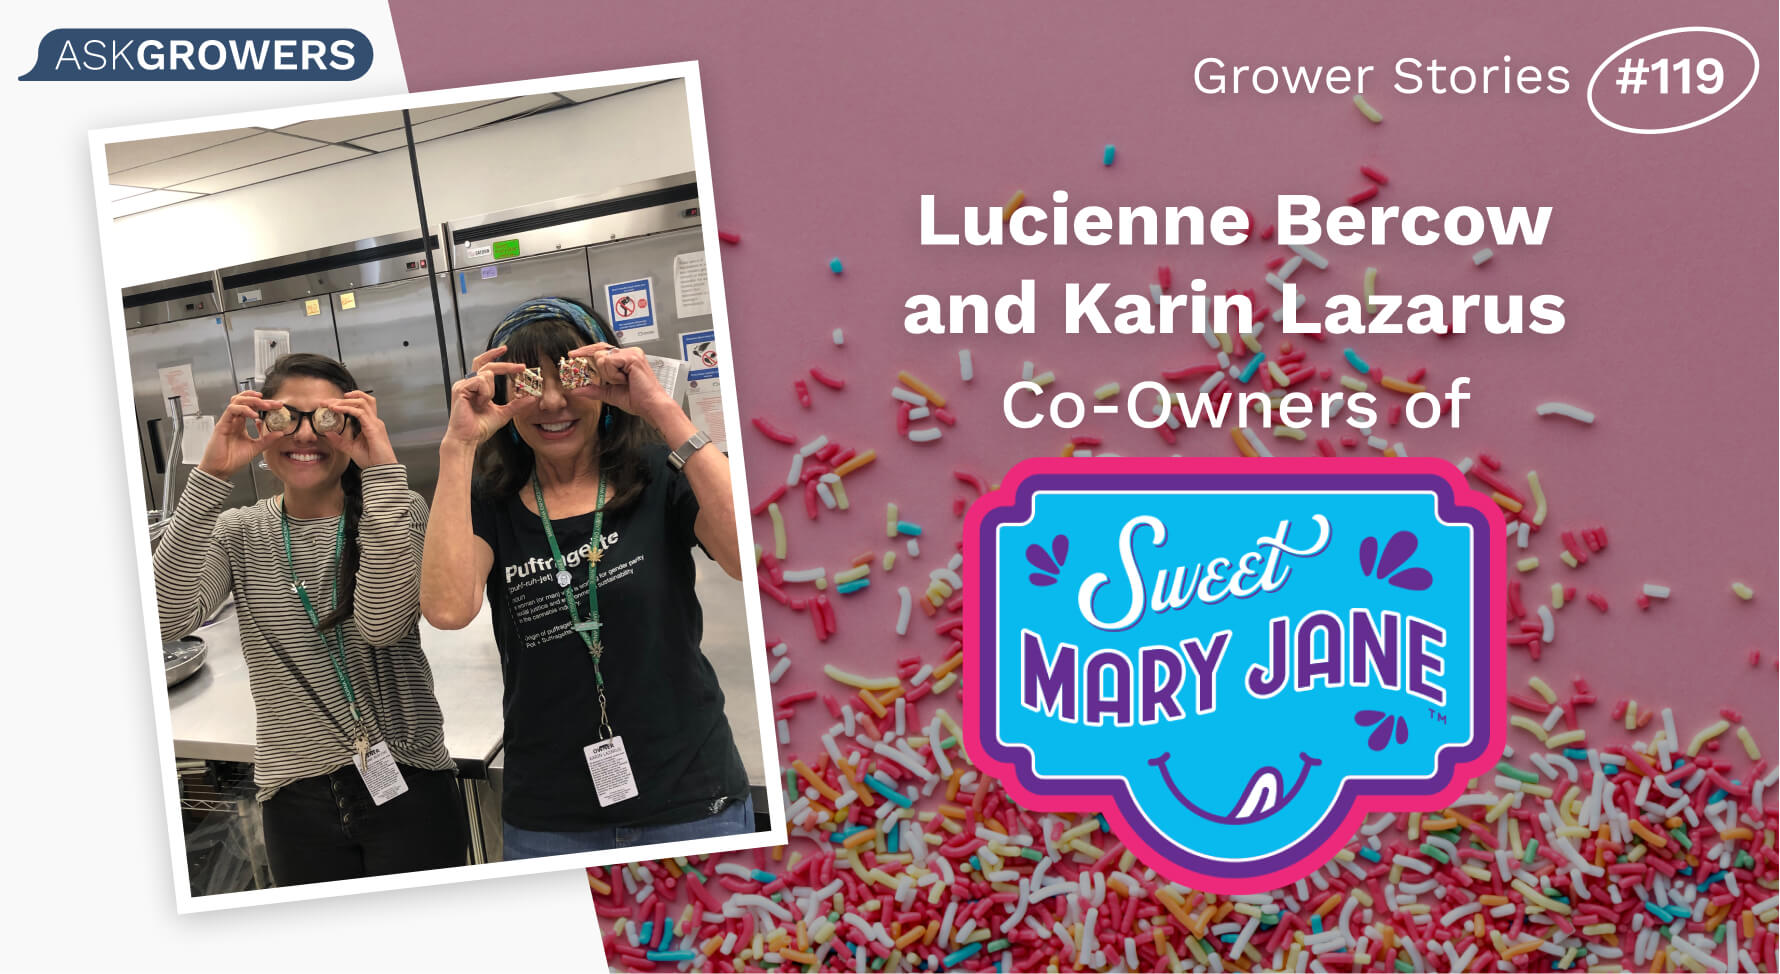 Grower Stories #119: Karin Lazarus